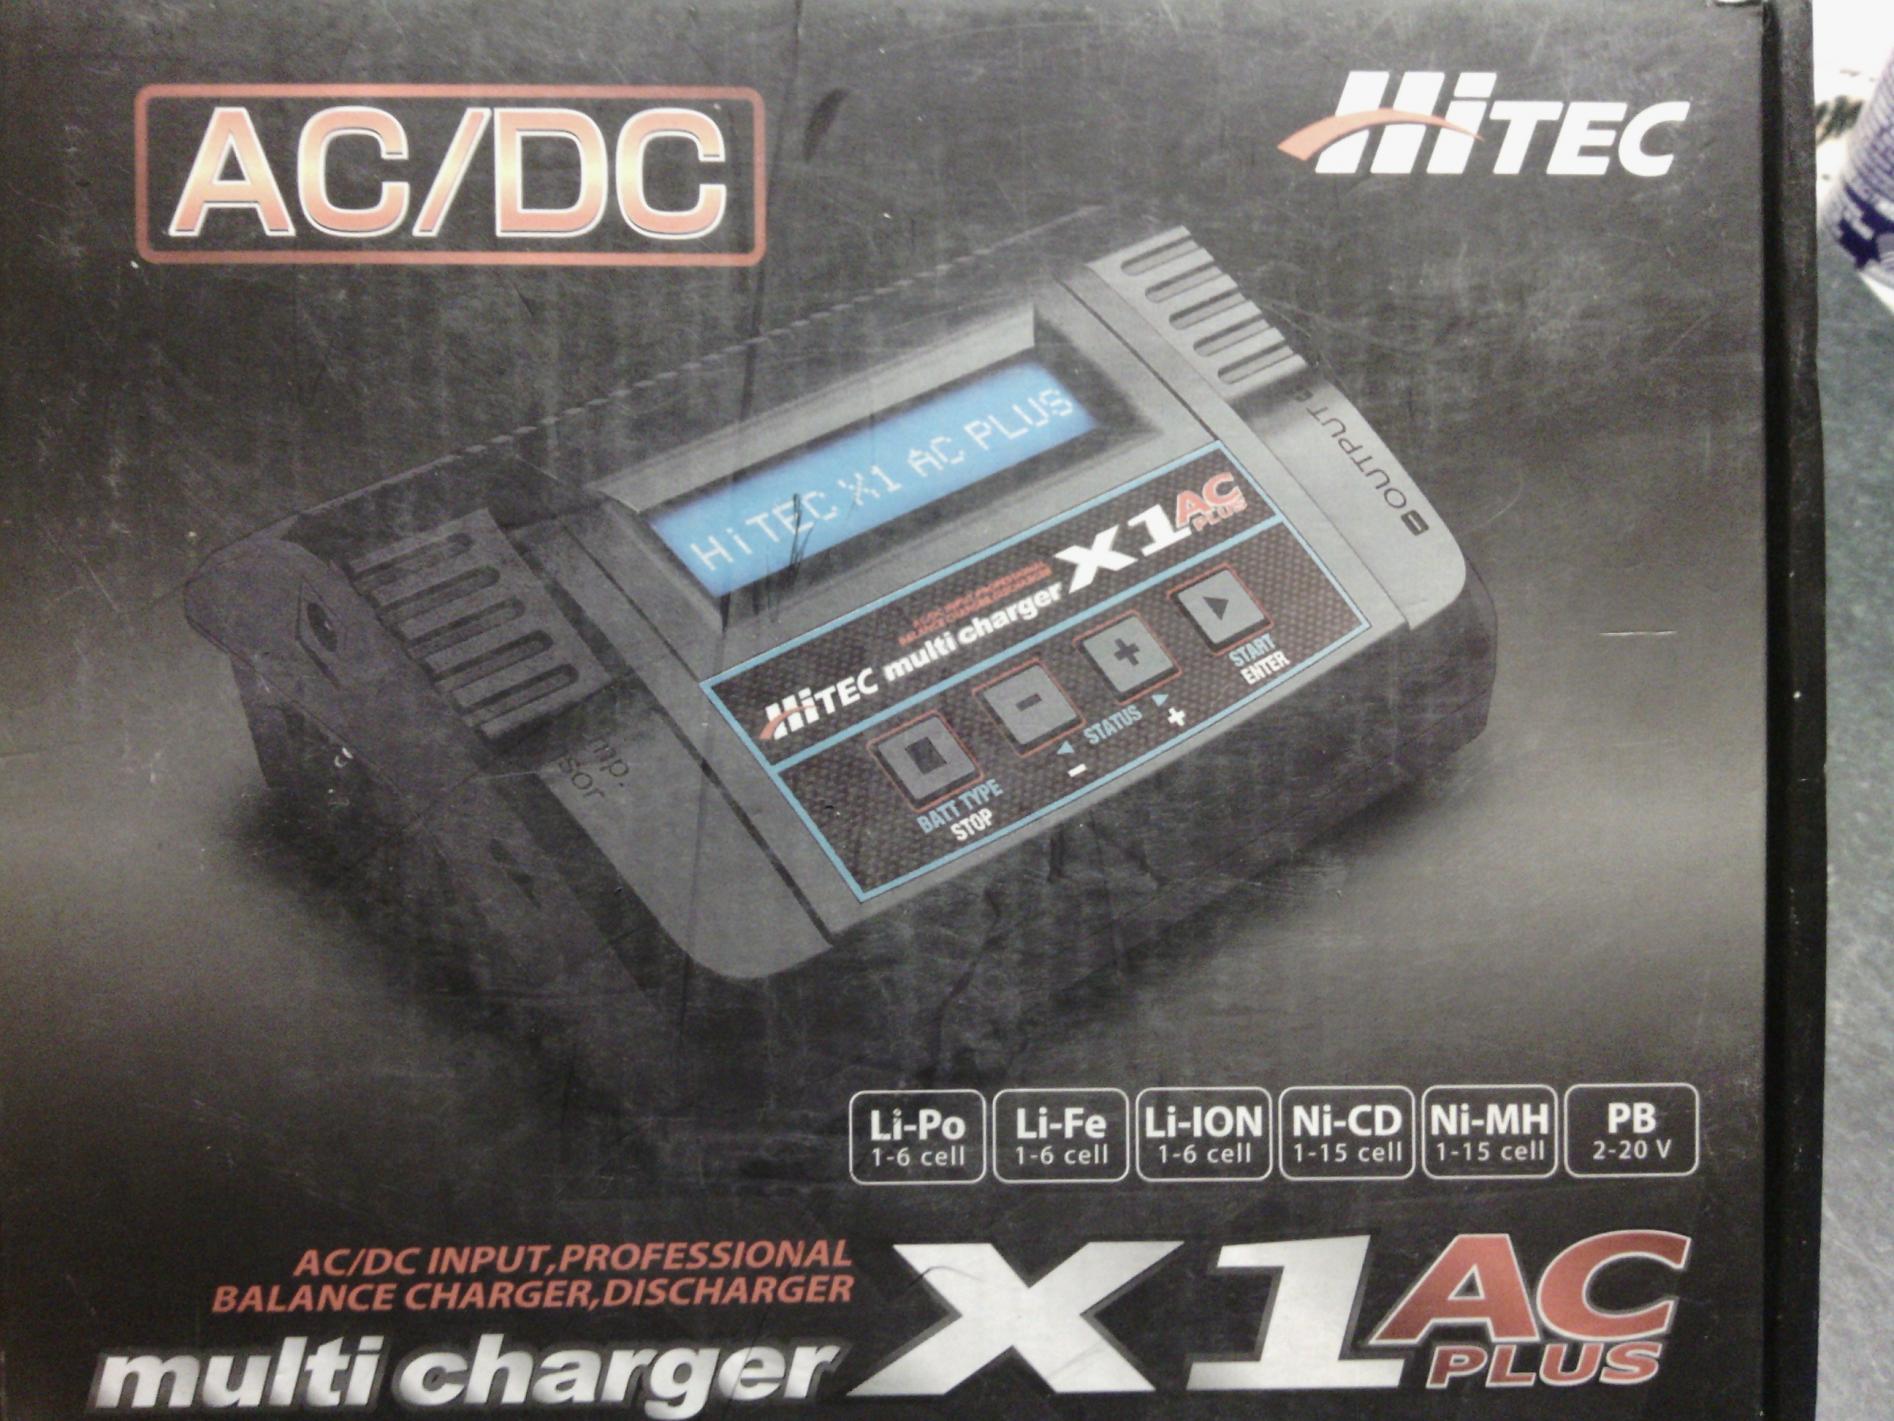 Hitec multi charger X1 ac plus - R/C Tech Forums